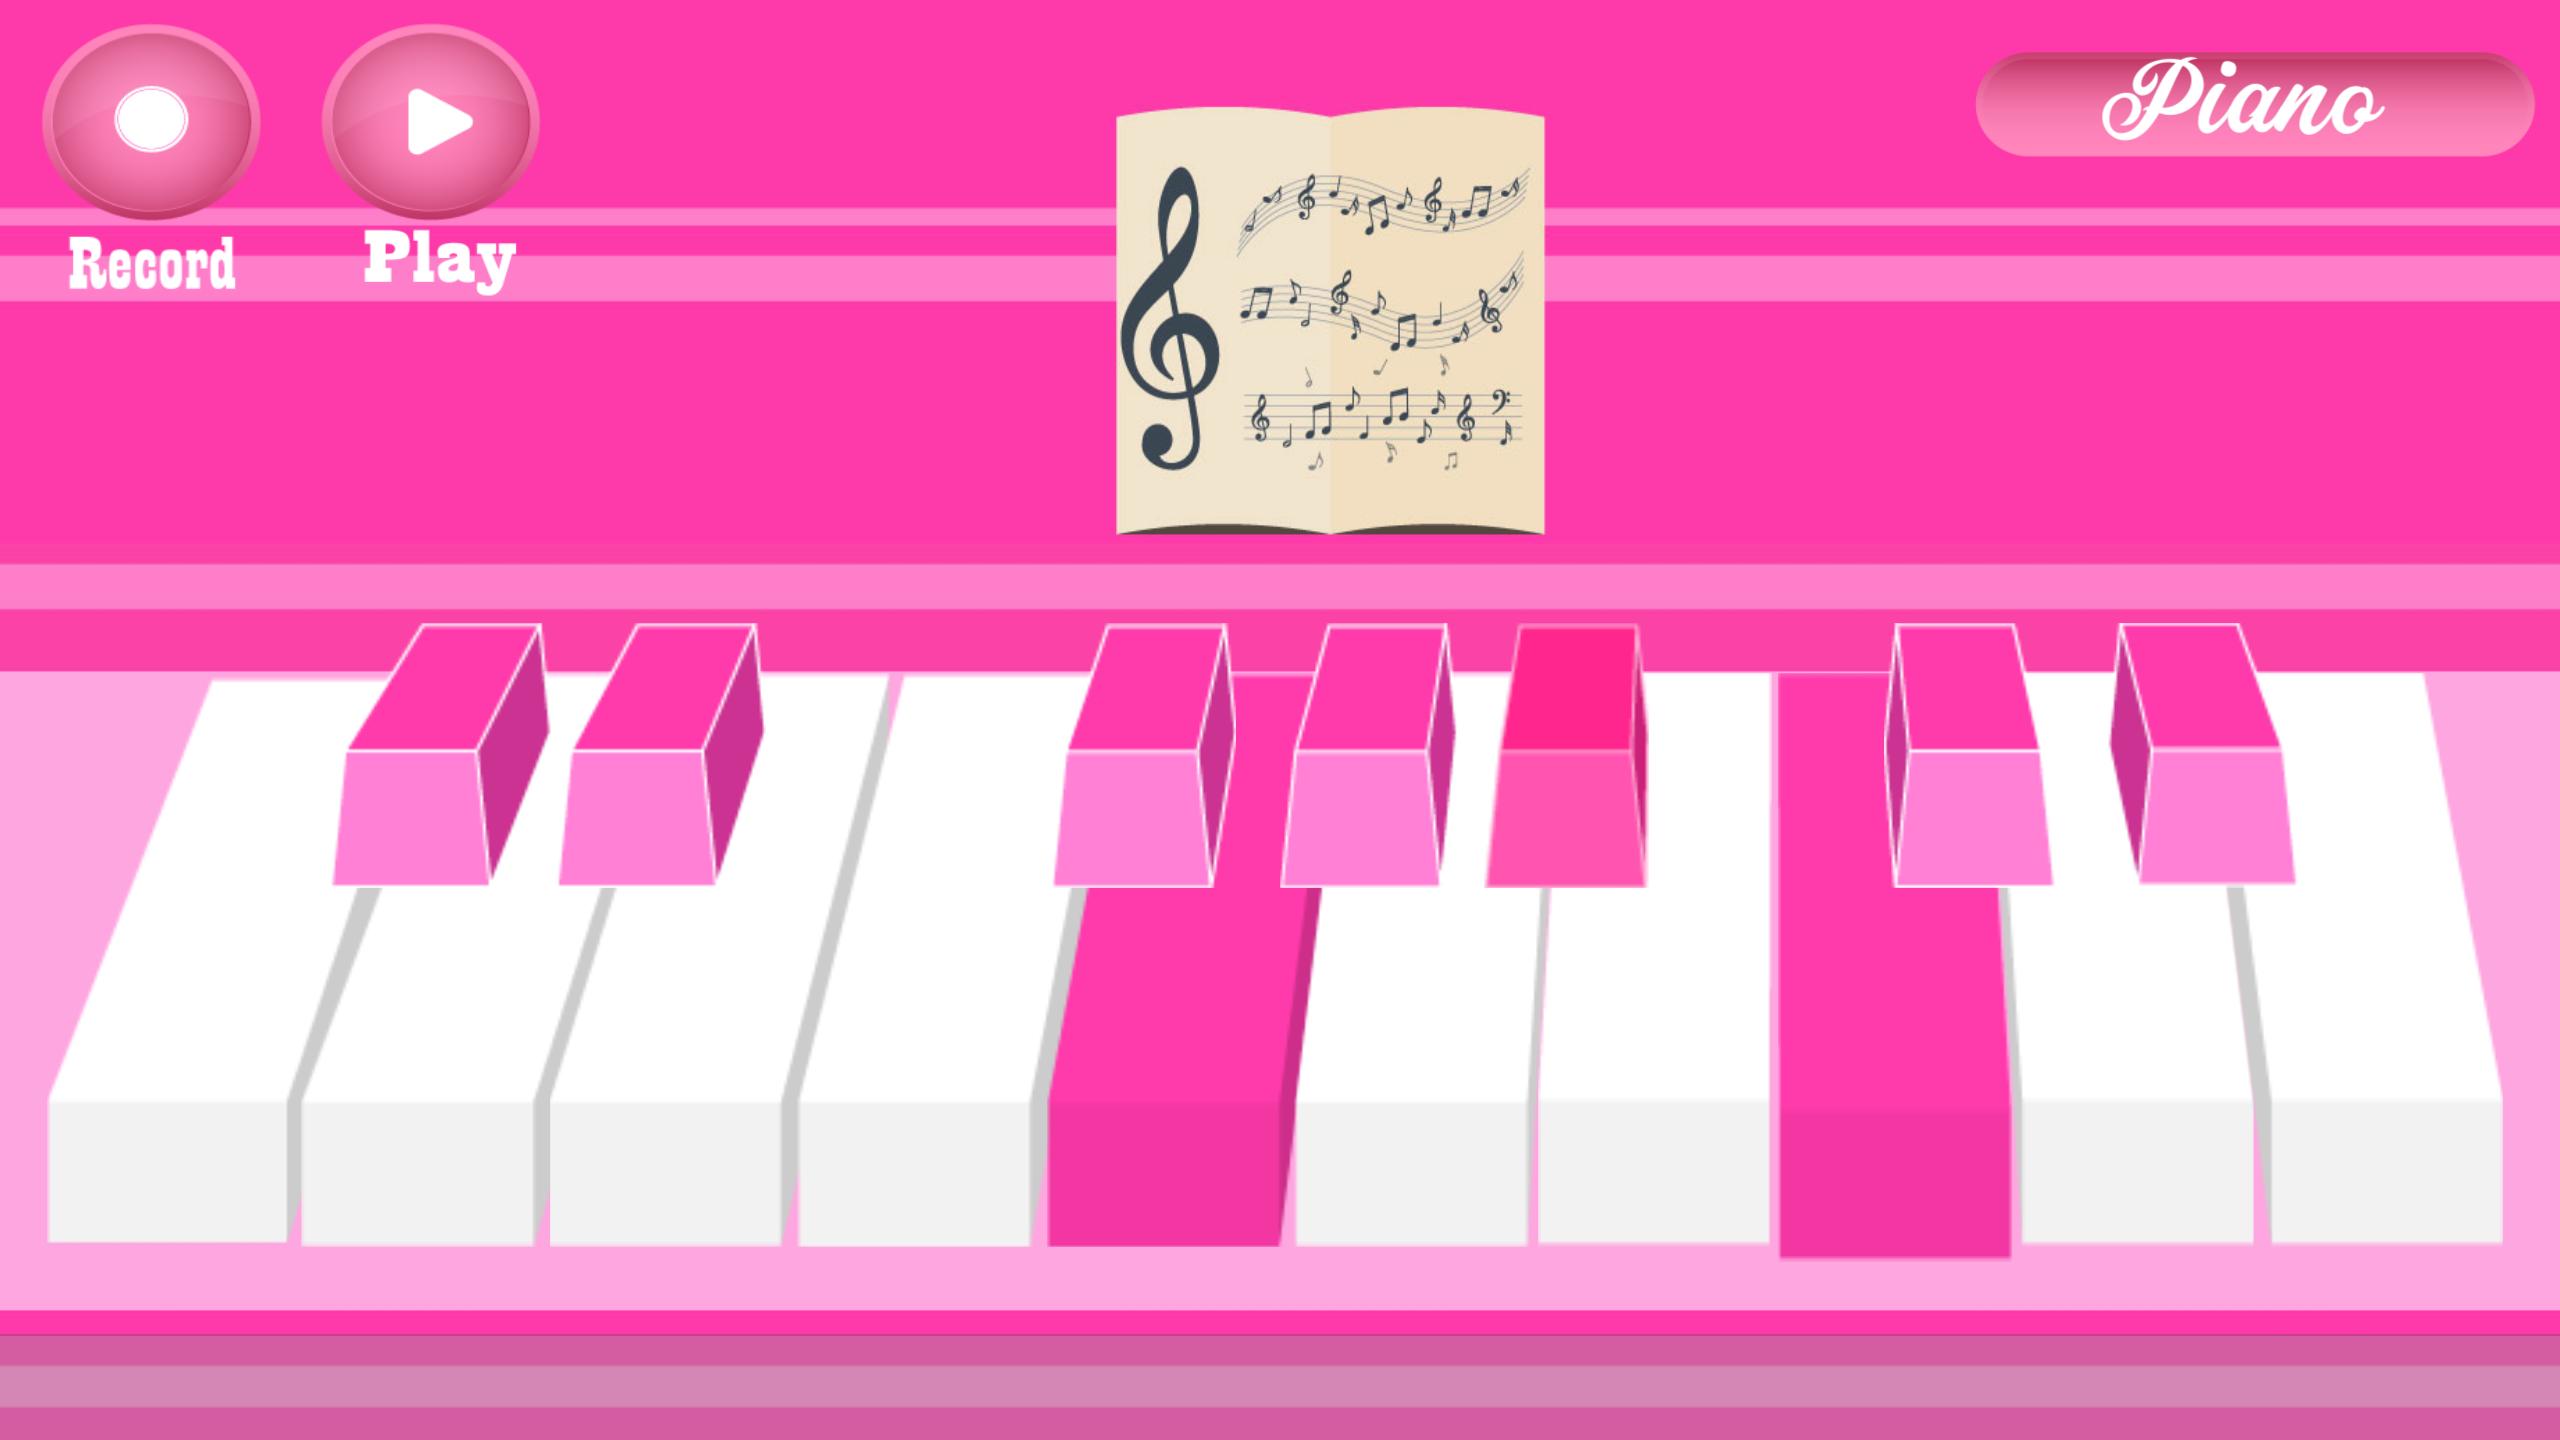 Играть на пианино падеж. Игра на пианино. Игра пианино играть. Пианино розовое для девочек. Нарисованный розовый рояль.